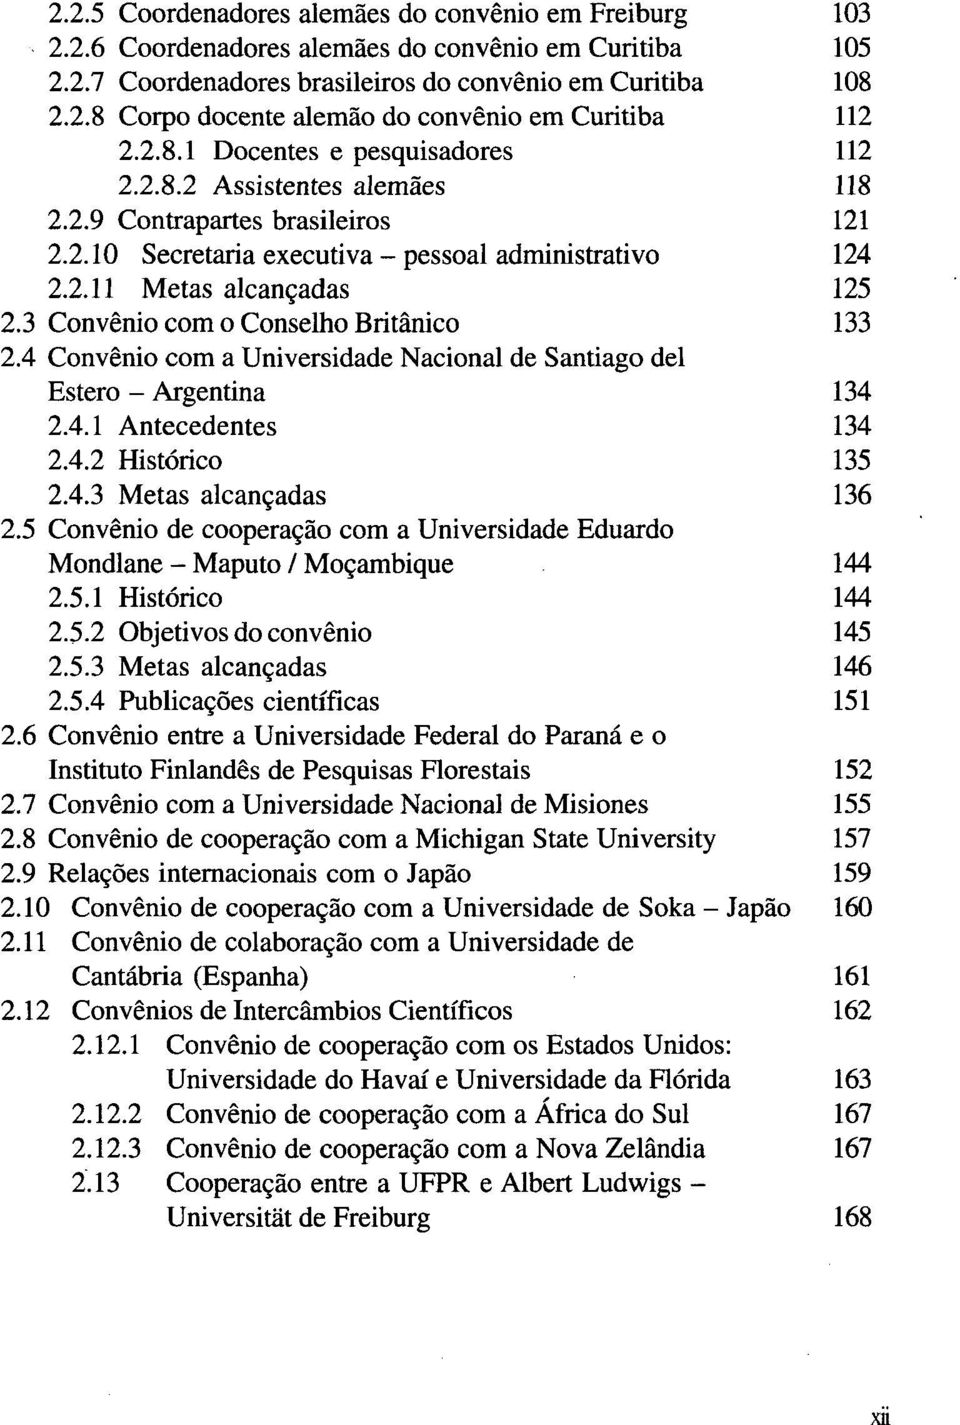 3 Convénio com o Conselho Britânico 133 2.4 Convénio com a Universidade Nacional de Santiago dei Estero - Argentina 134 2.4.1 Antecedentes 134 2.4.2 Histórico 135 2.4.3 Metas alcançadas 136 2.